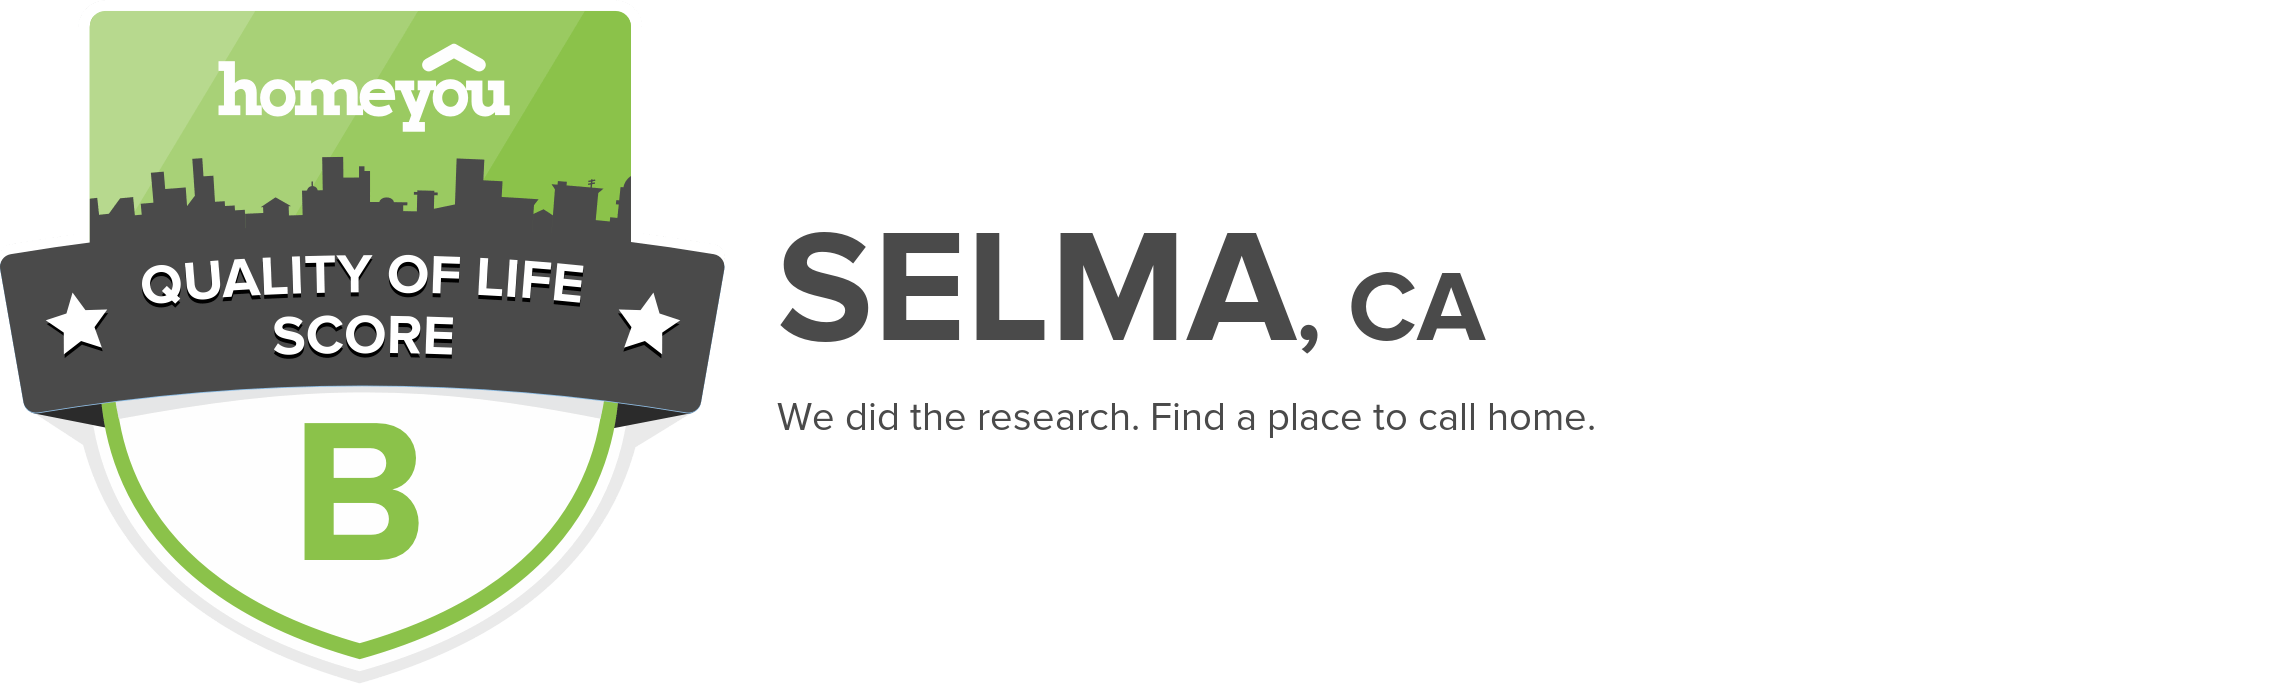 Selma, CA